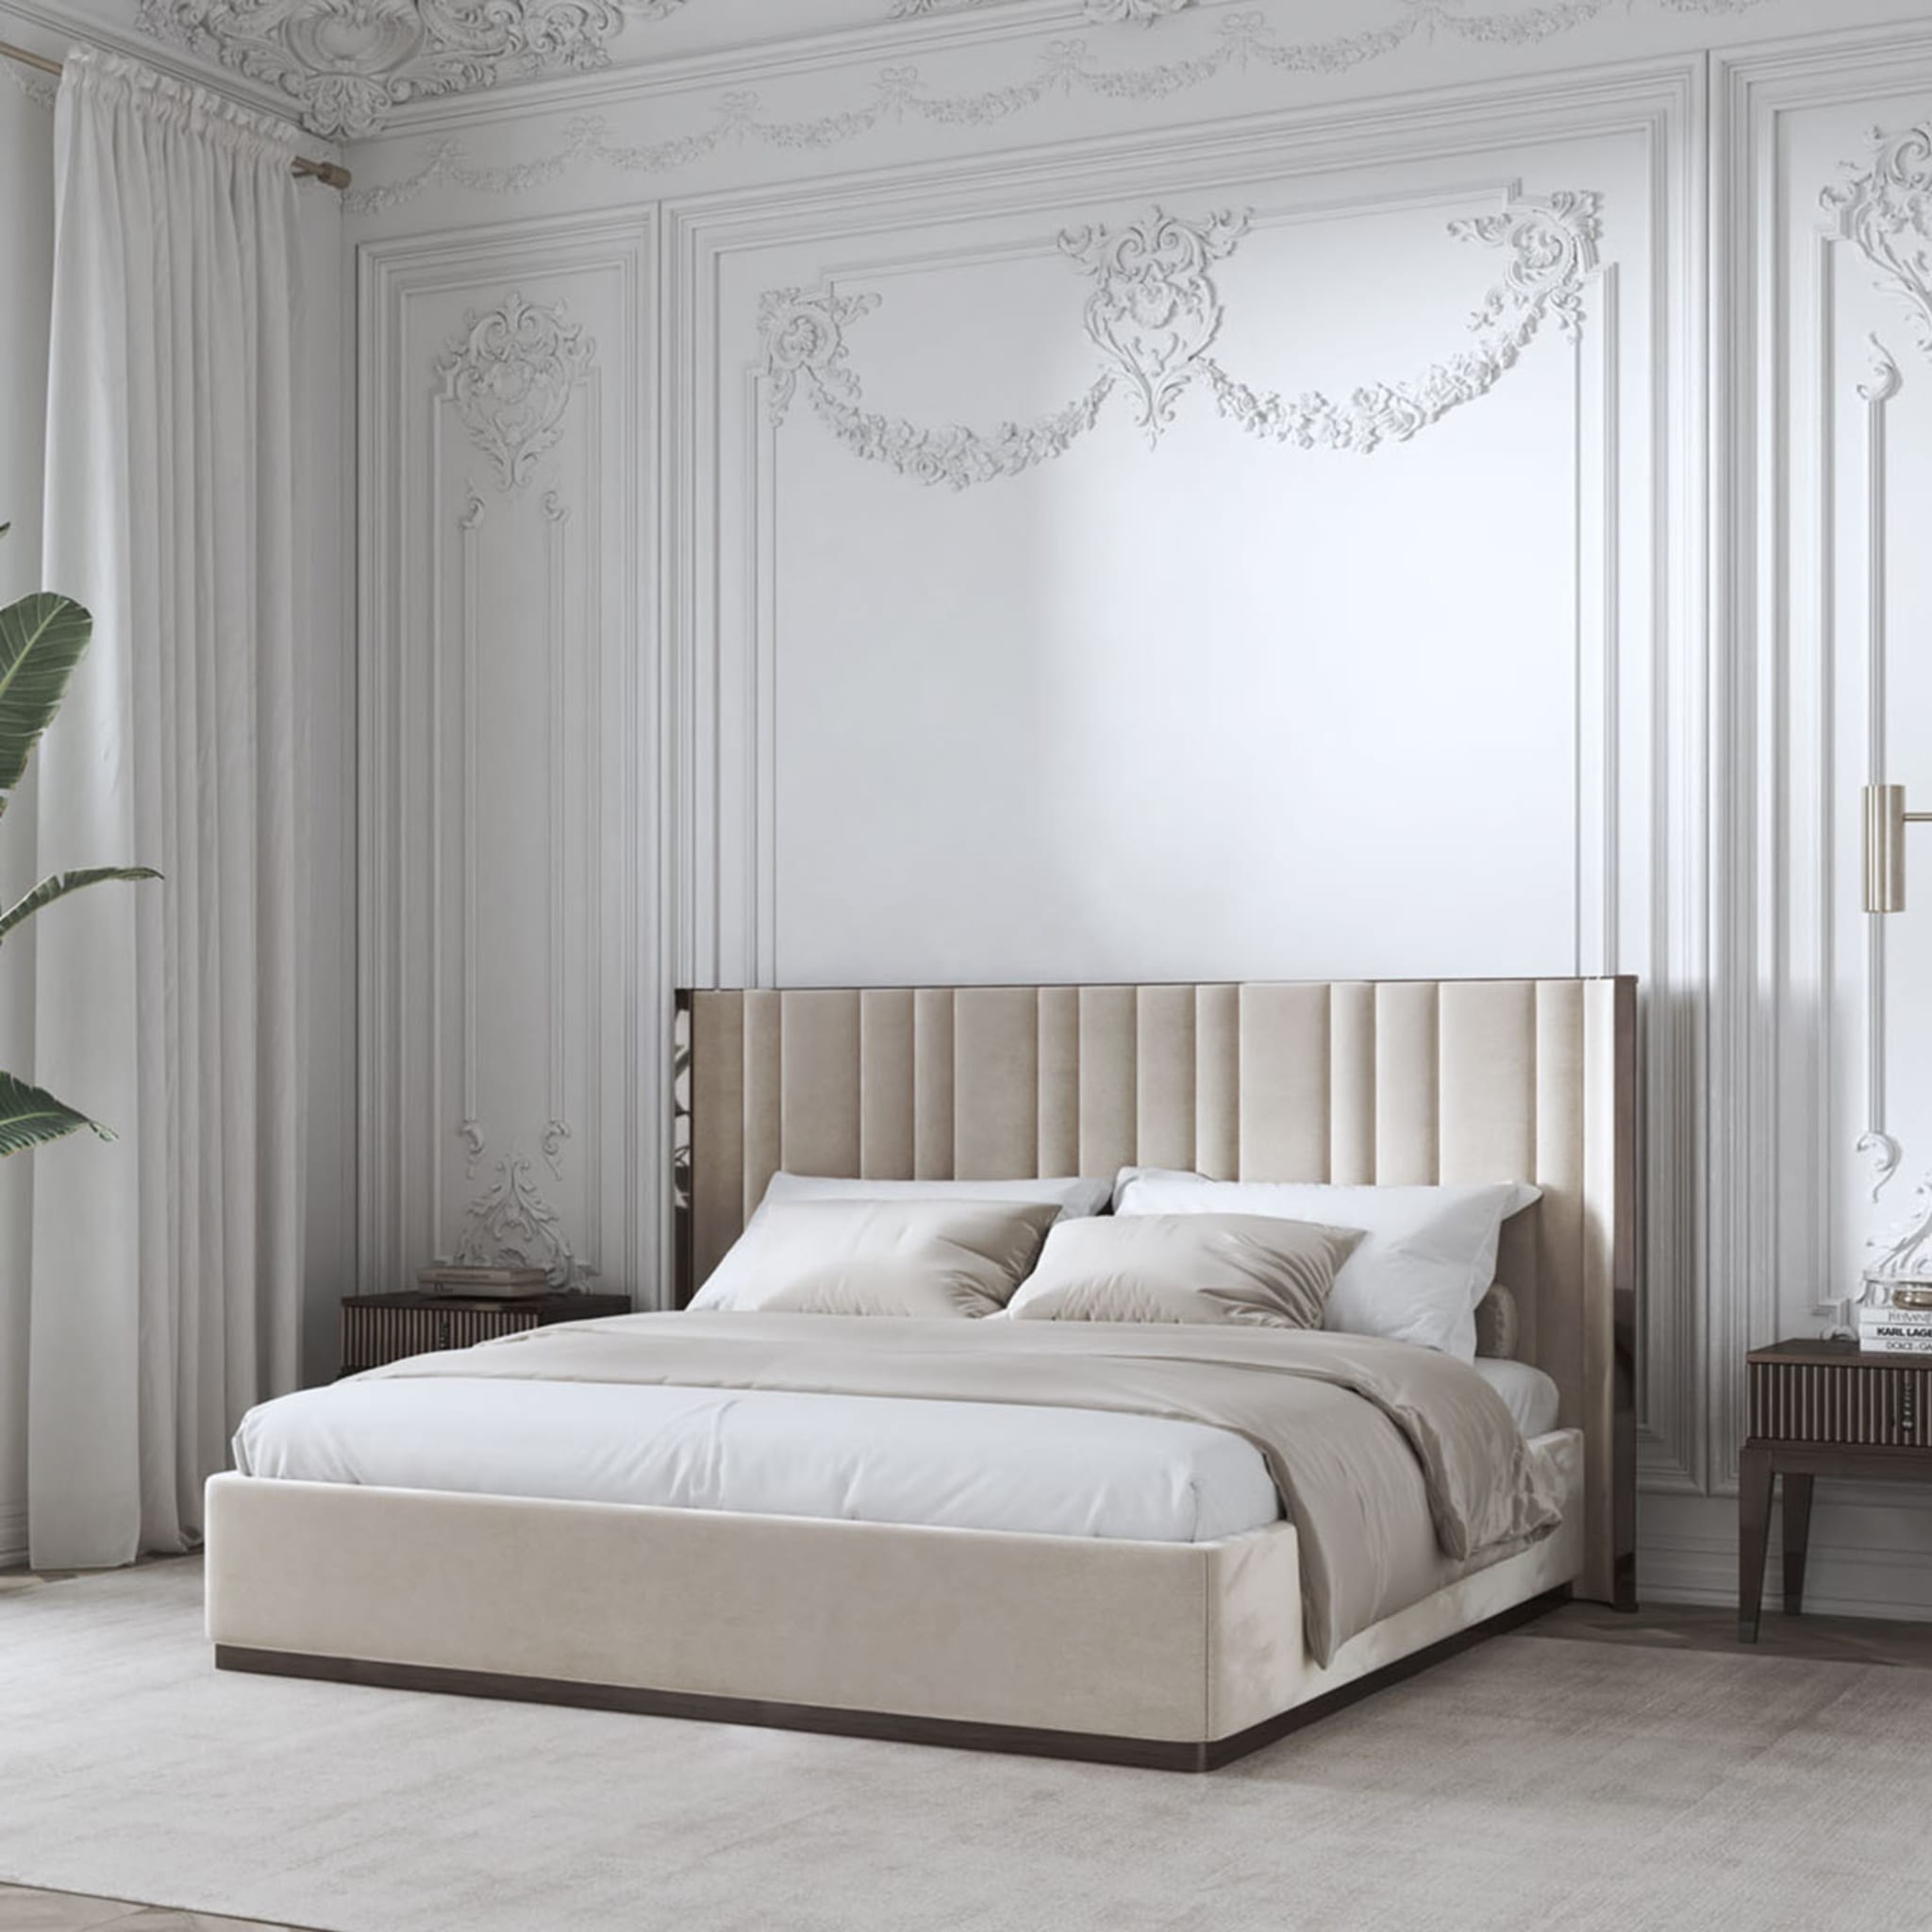  Saga 140 Italian Curved Bed Upholstered In Velvet Fabric - Alternative view 3